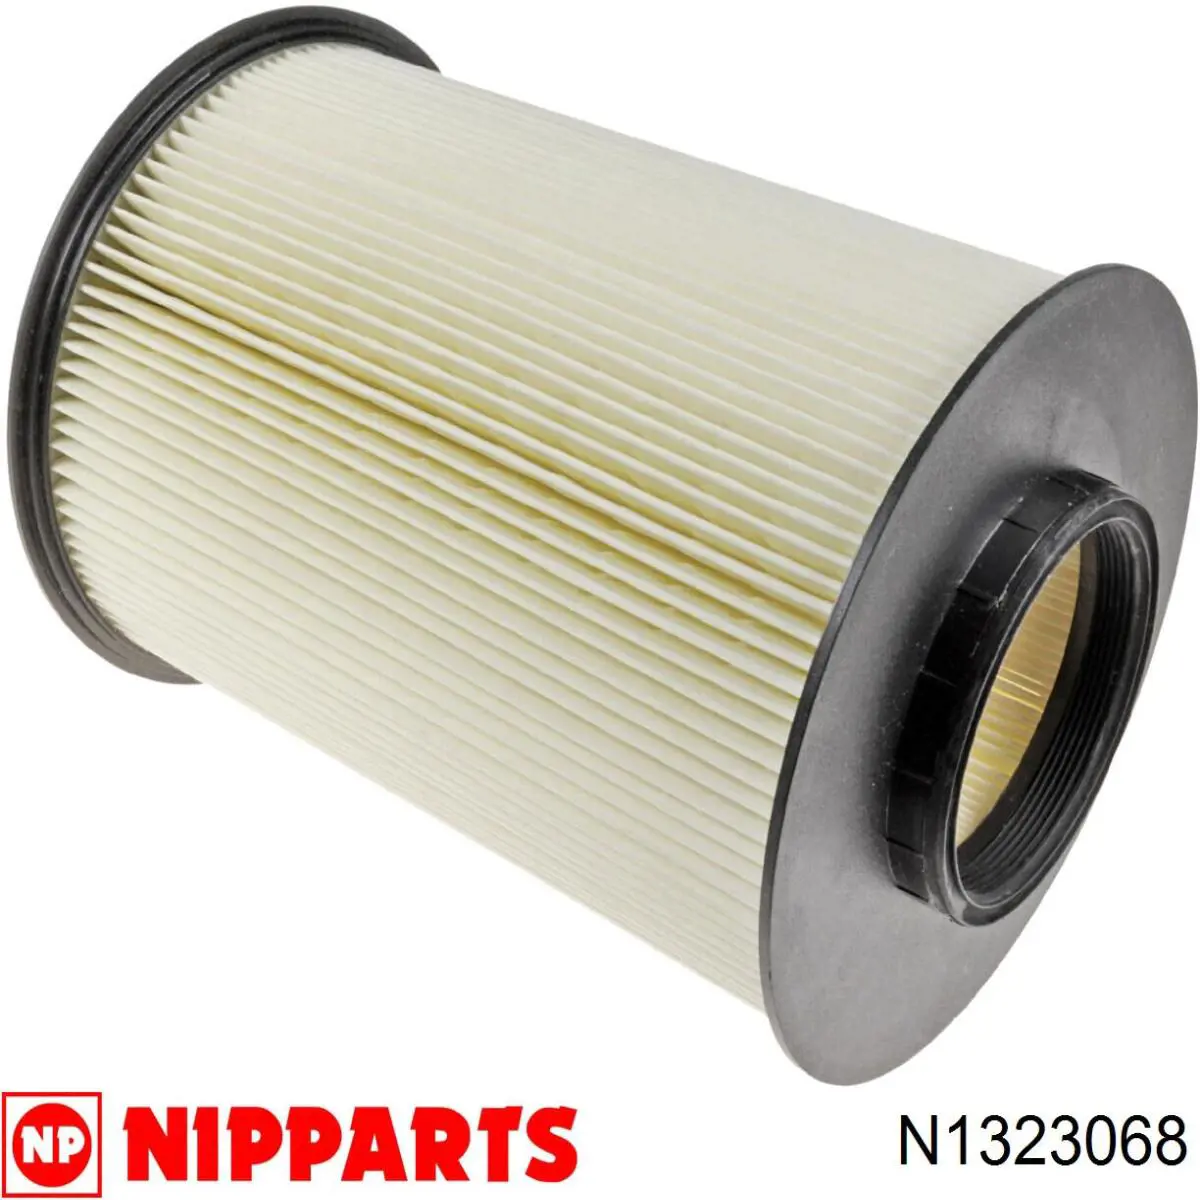 N1323068 Nipparts filtro de aire